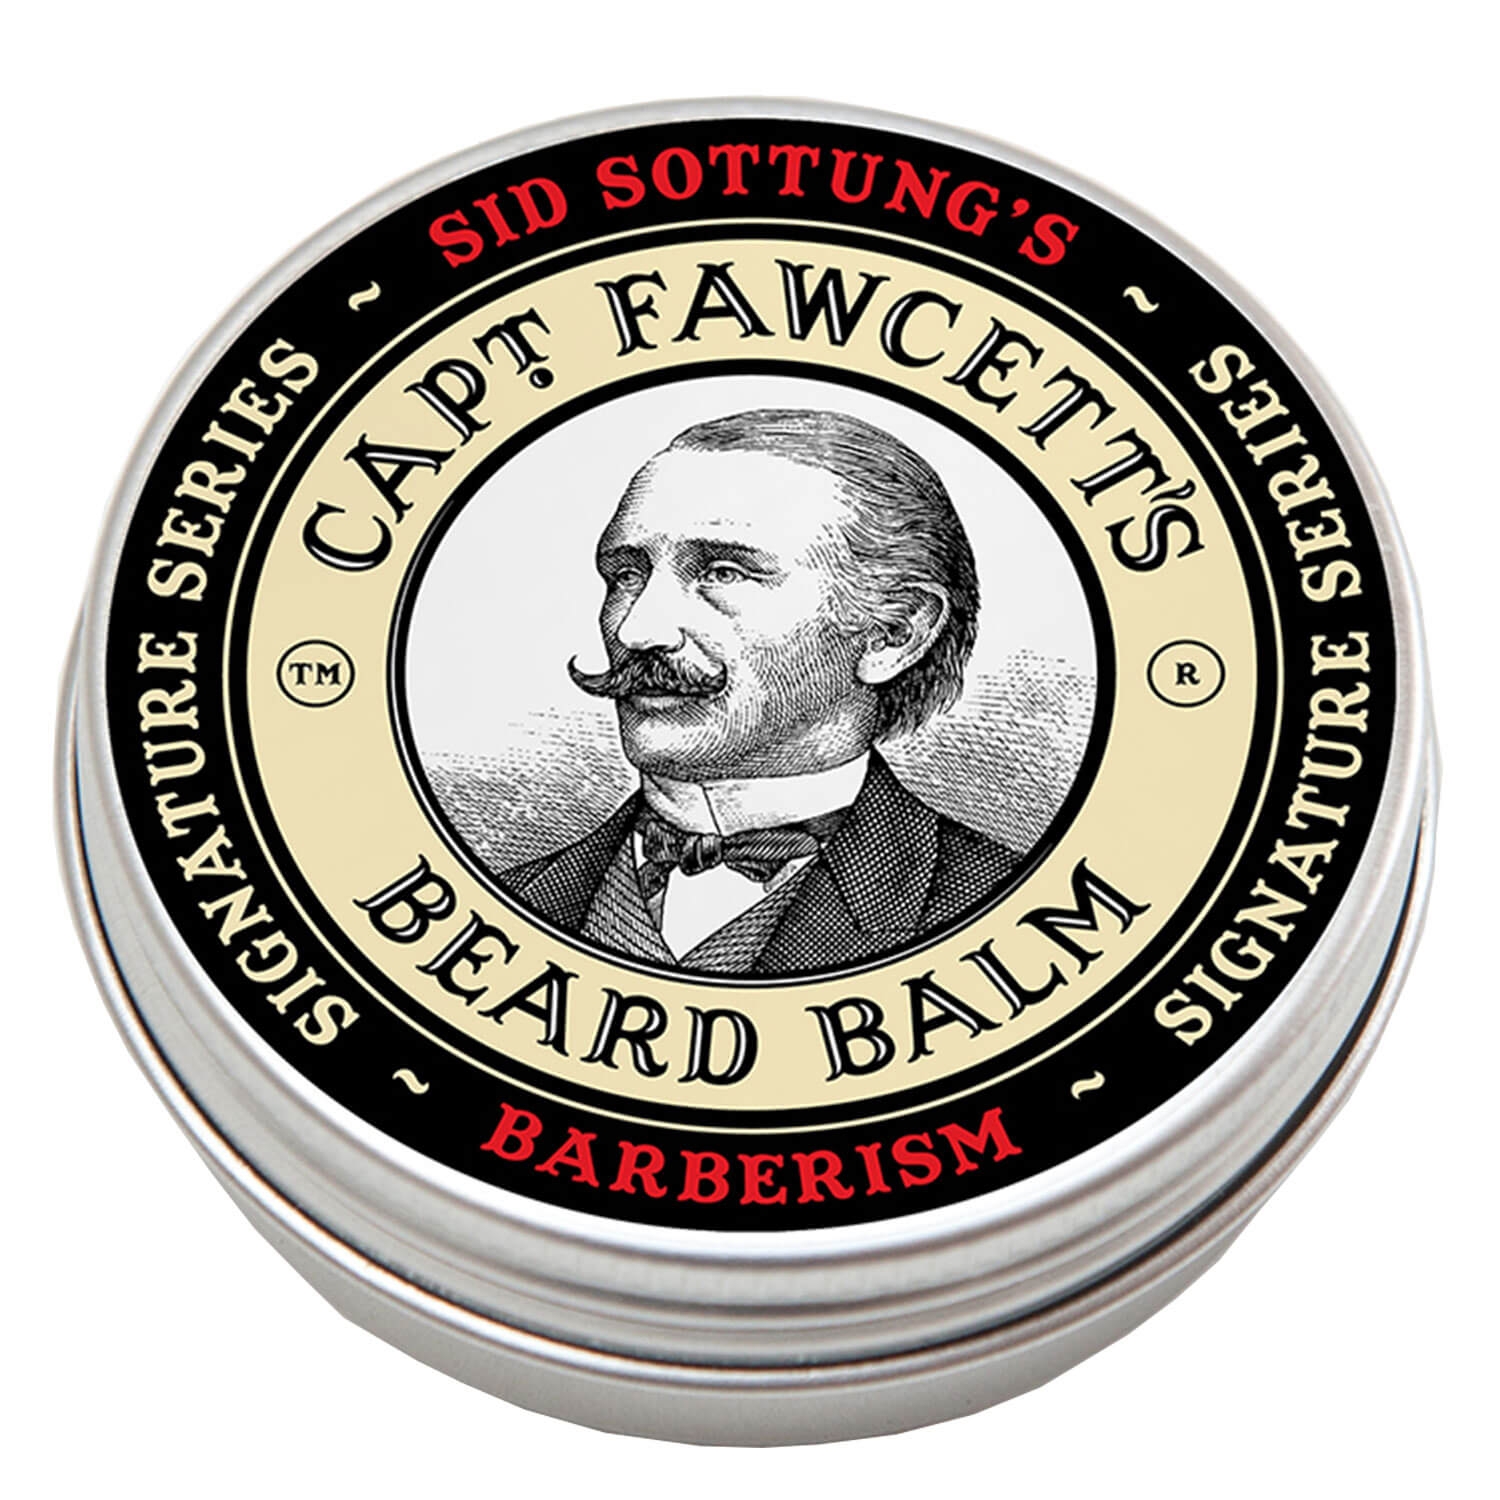 Image du produit de Capt. Fawcett Care - Sid Sottung's Barberism Beard Balm